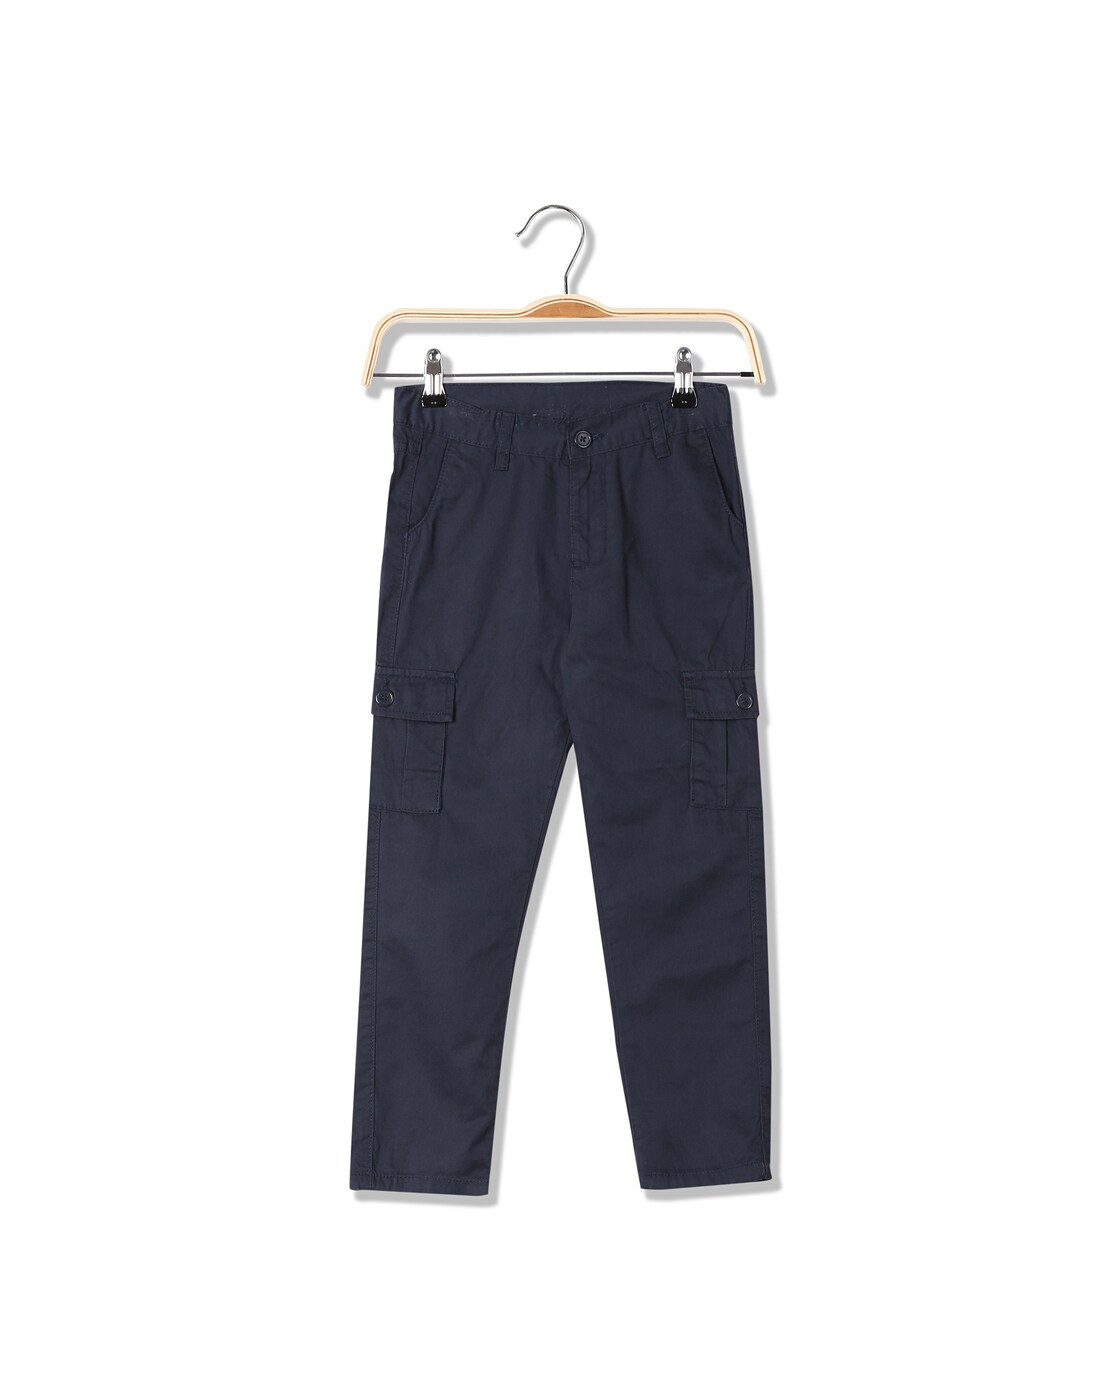 EX M&S Boys Slim Fit Cargo Pocket School Trousers Grey School Uniform Age  2-12 | eBay